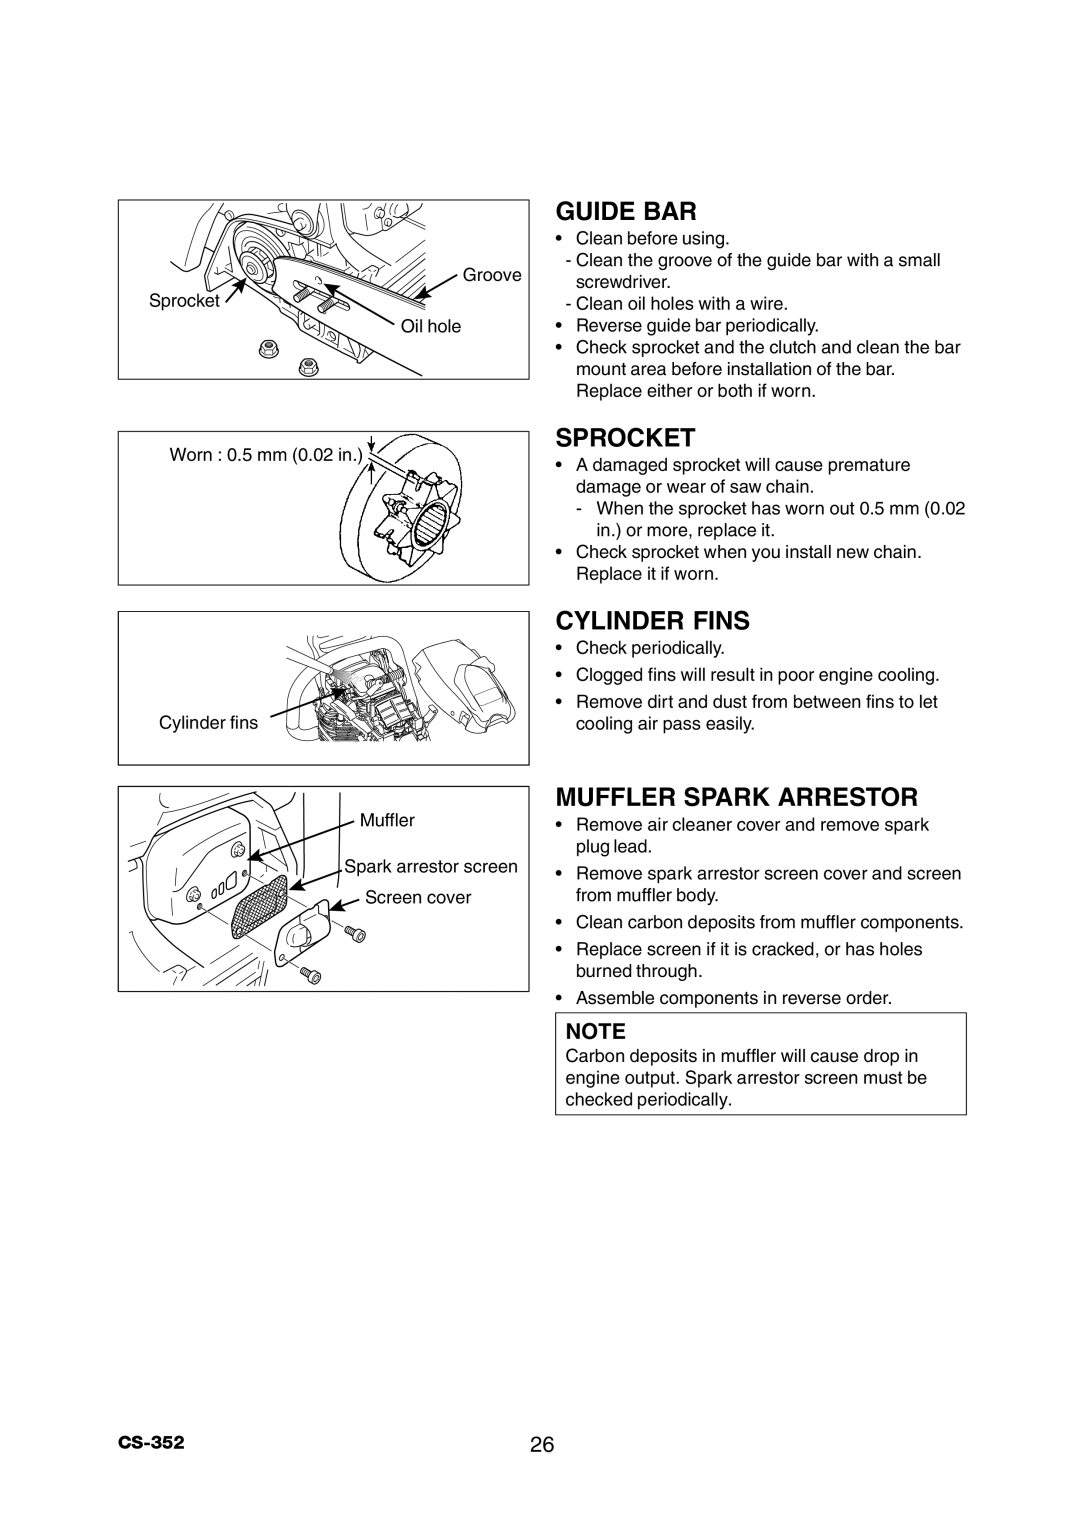 Echo instruction manual Sprocket, Cylinder Fins, Muffler Spark Arrestor, Guide Bar, CS-35226 